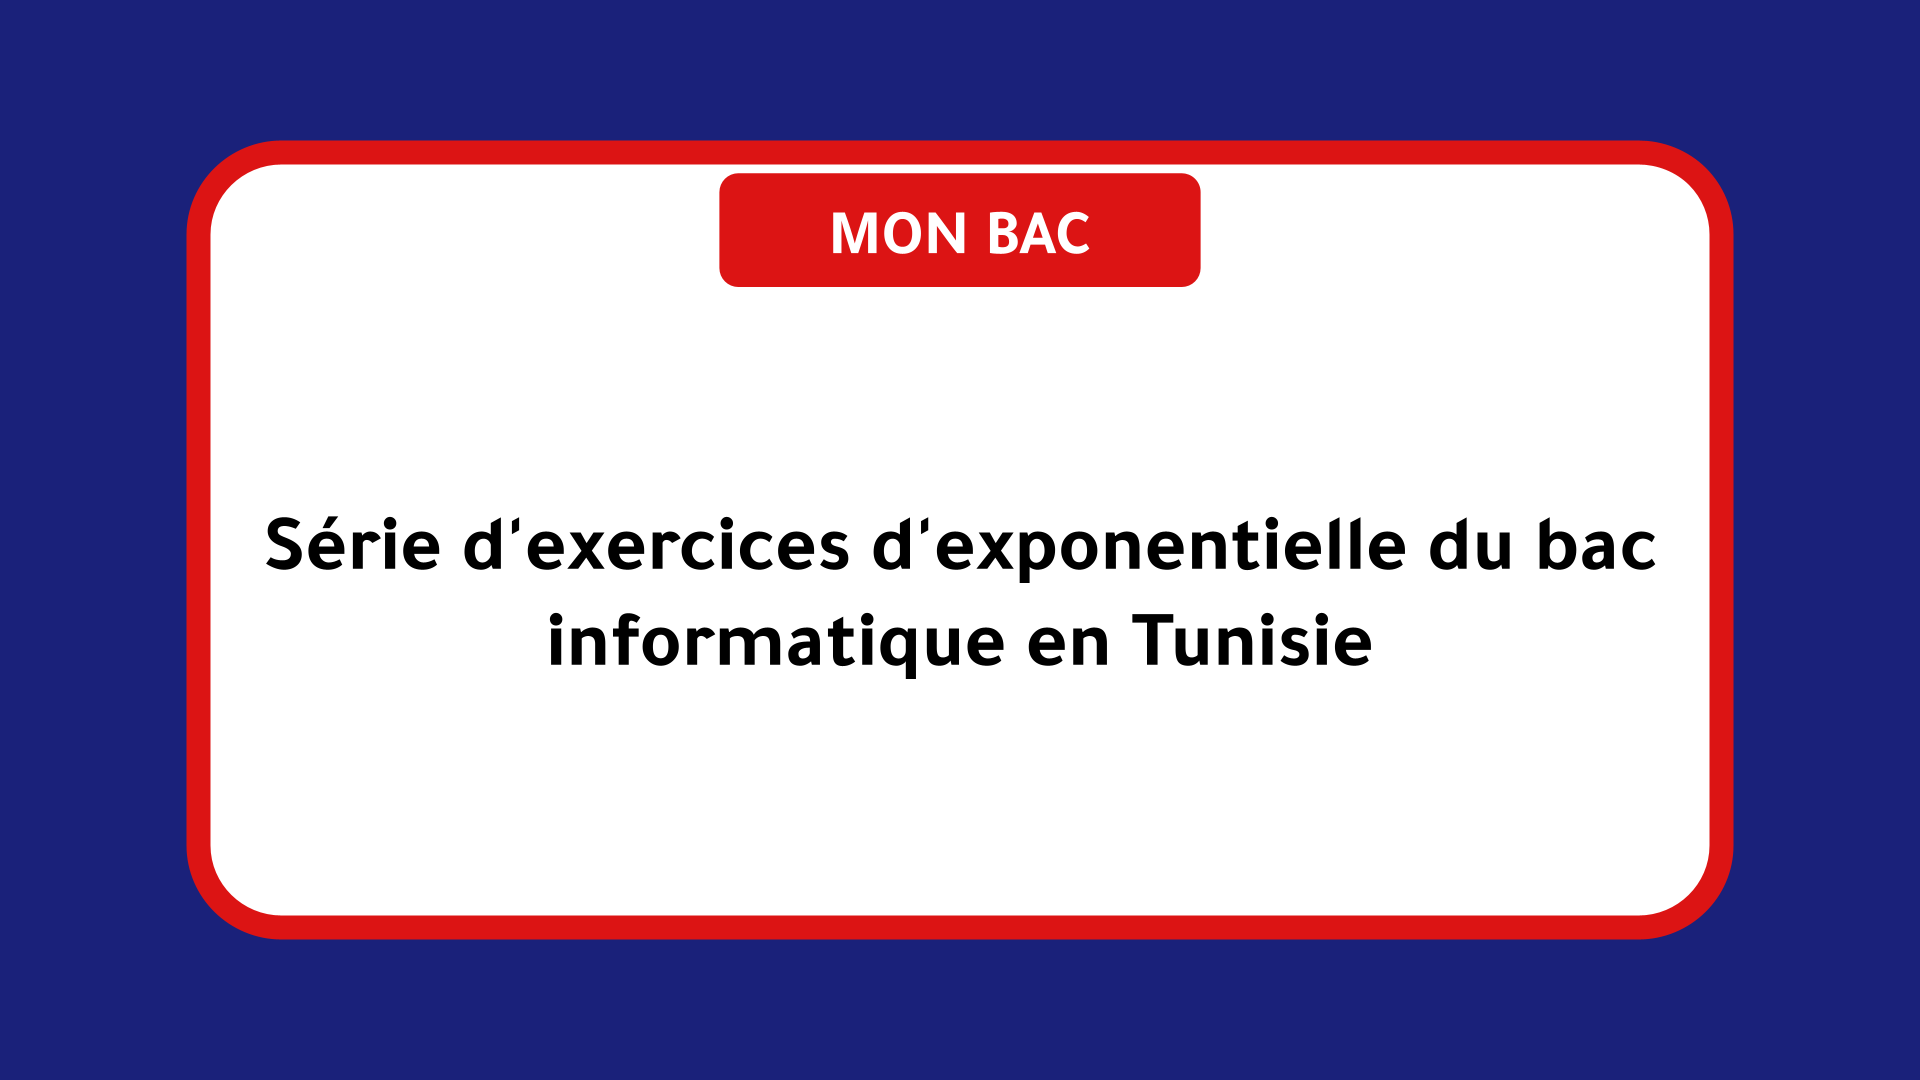 Série d'exercices d'exponentielle bac informatique Tunisie